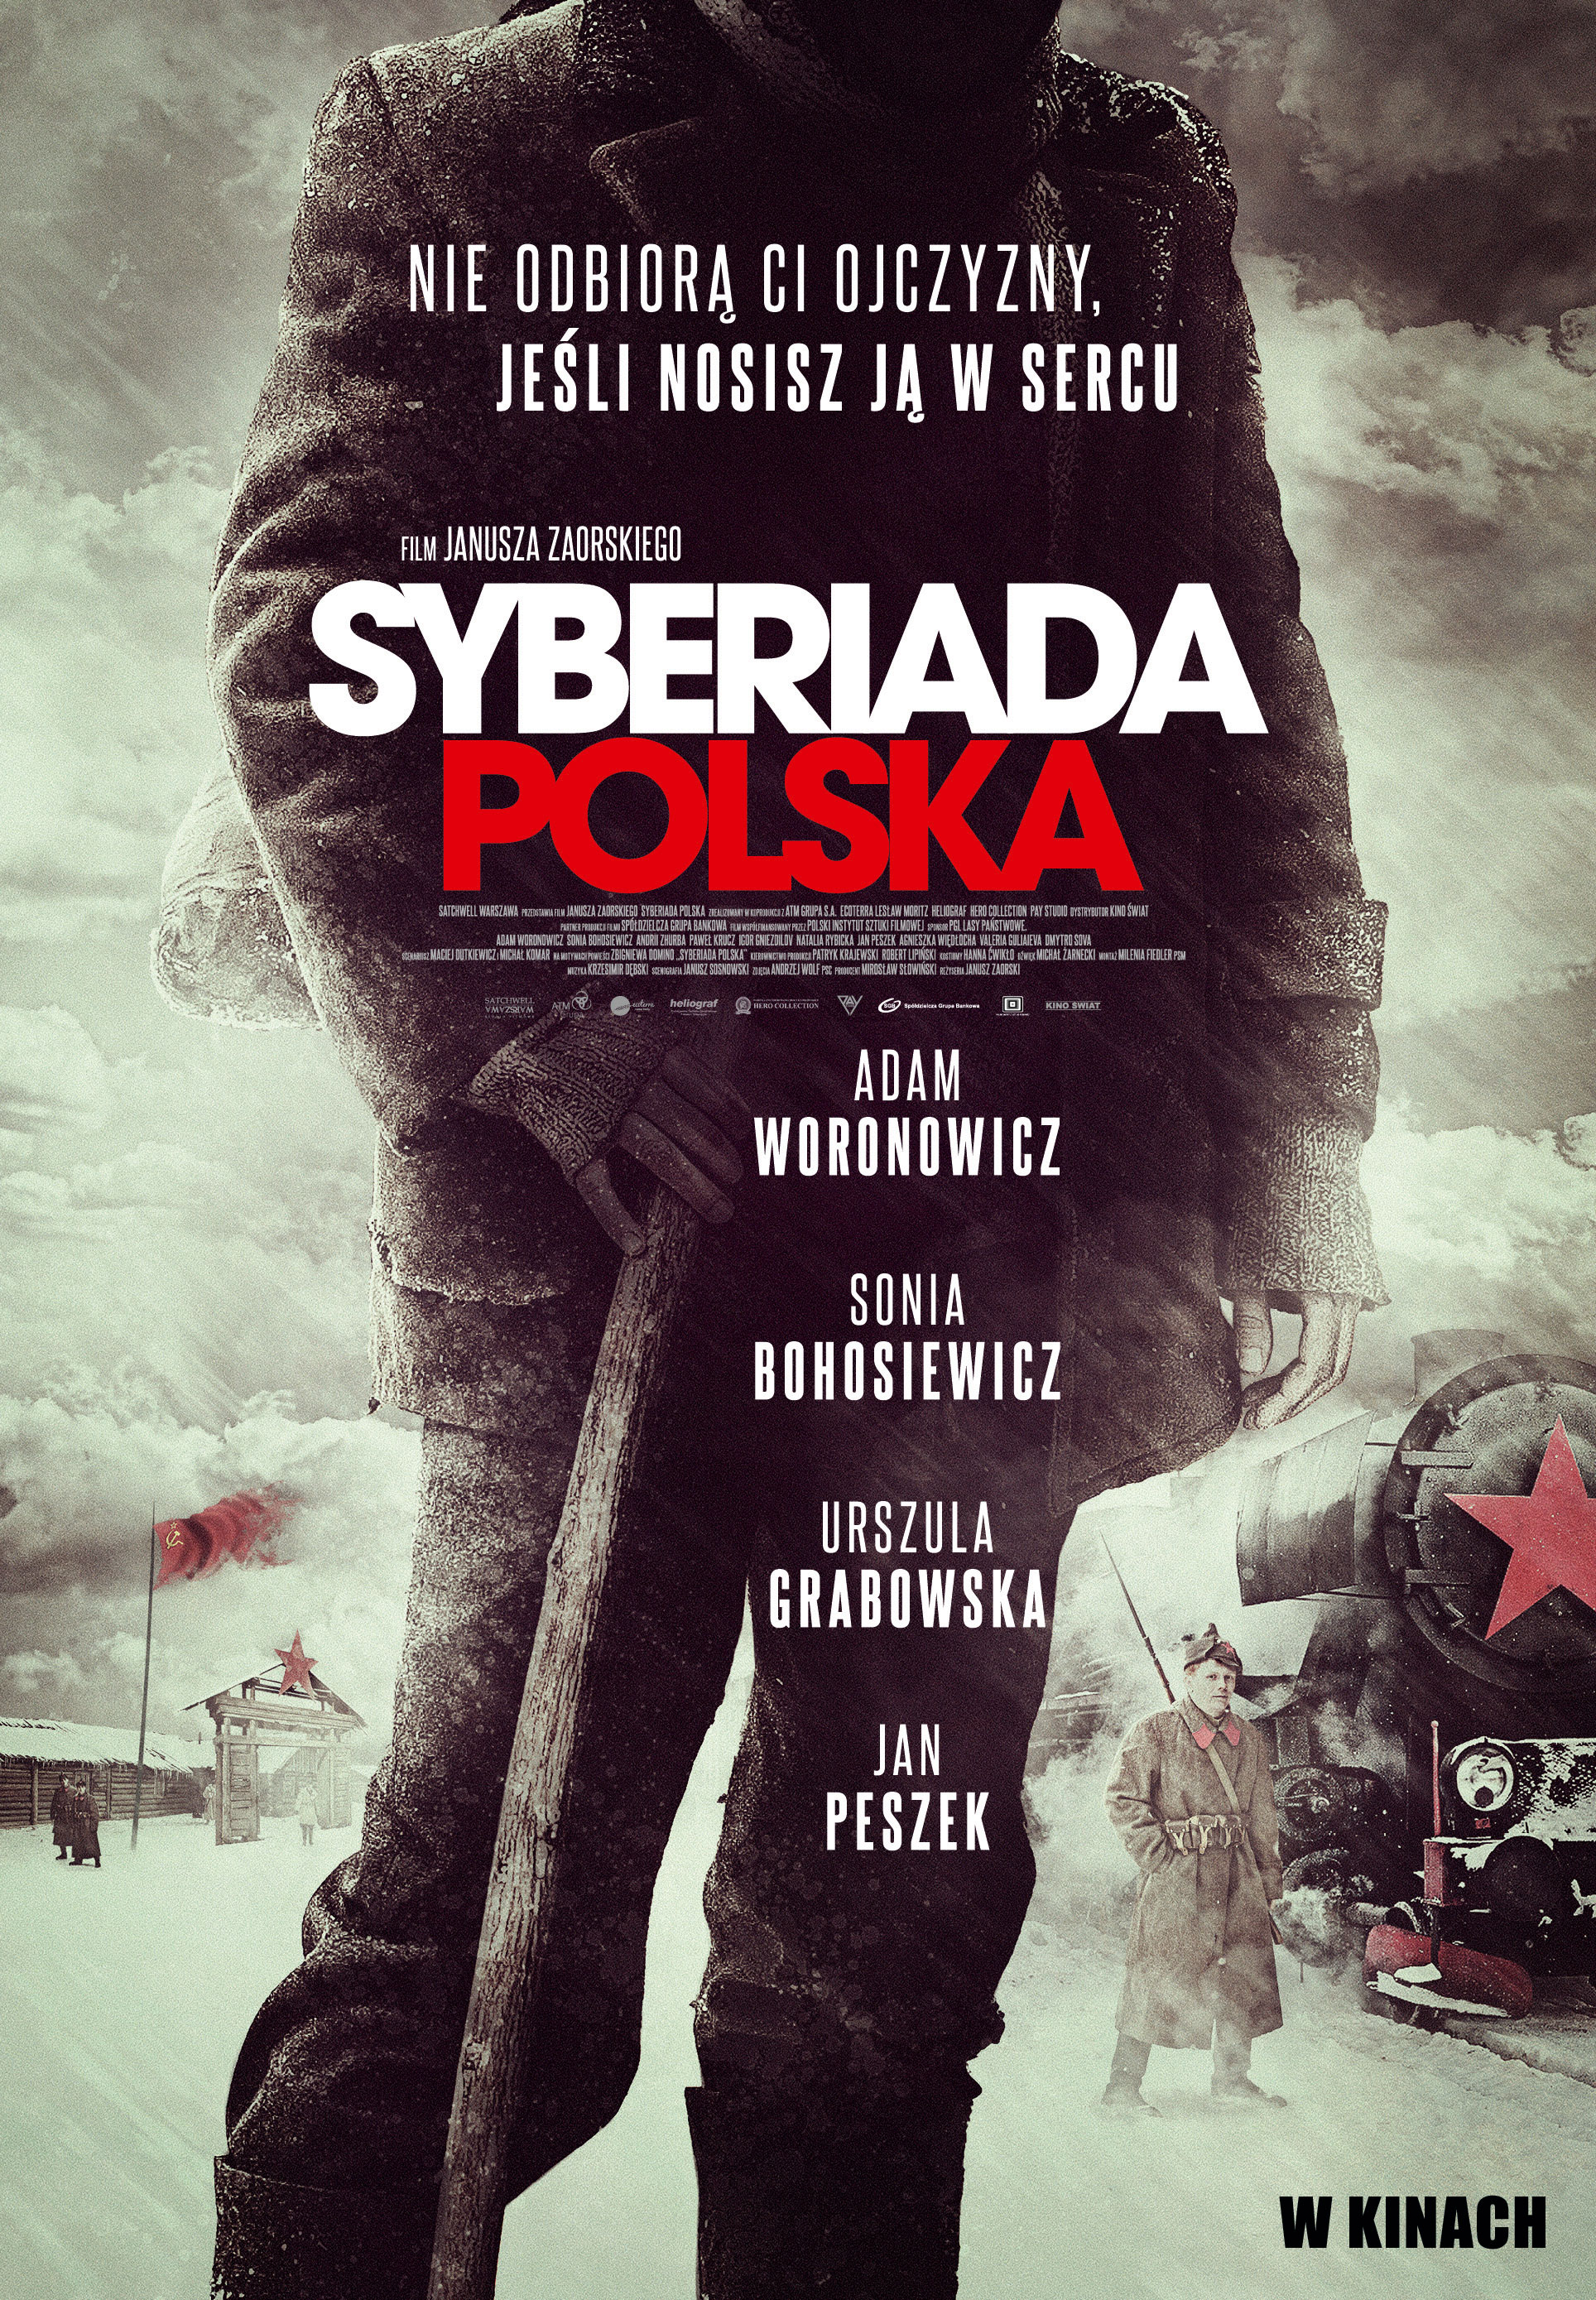 Syberiada polska (2013)